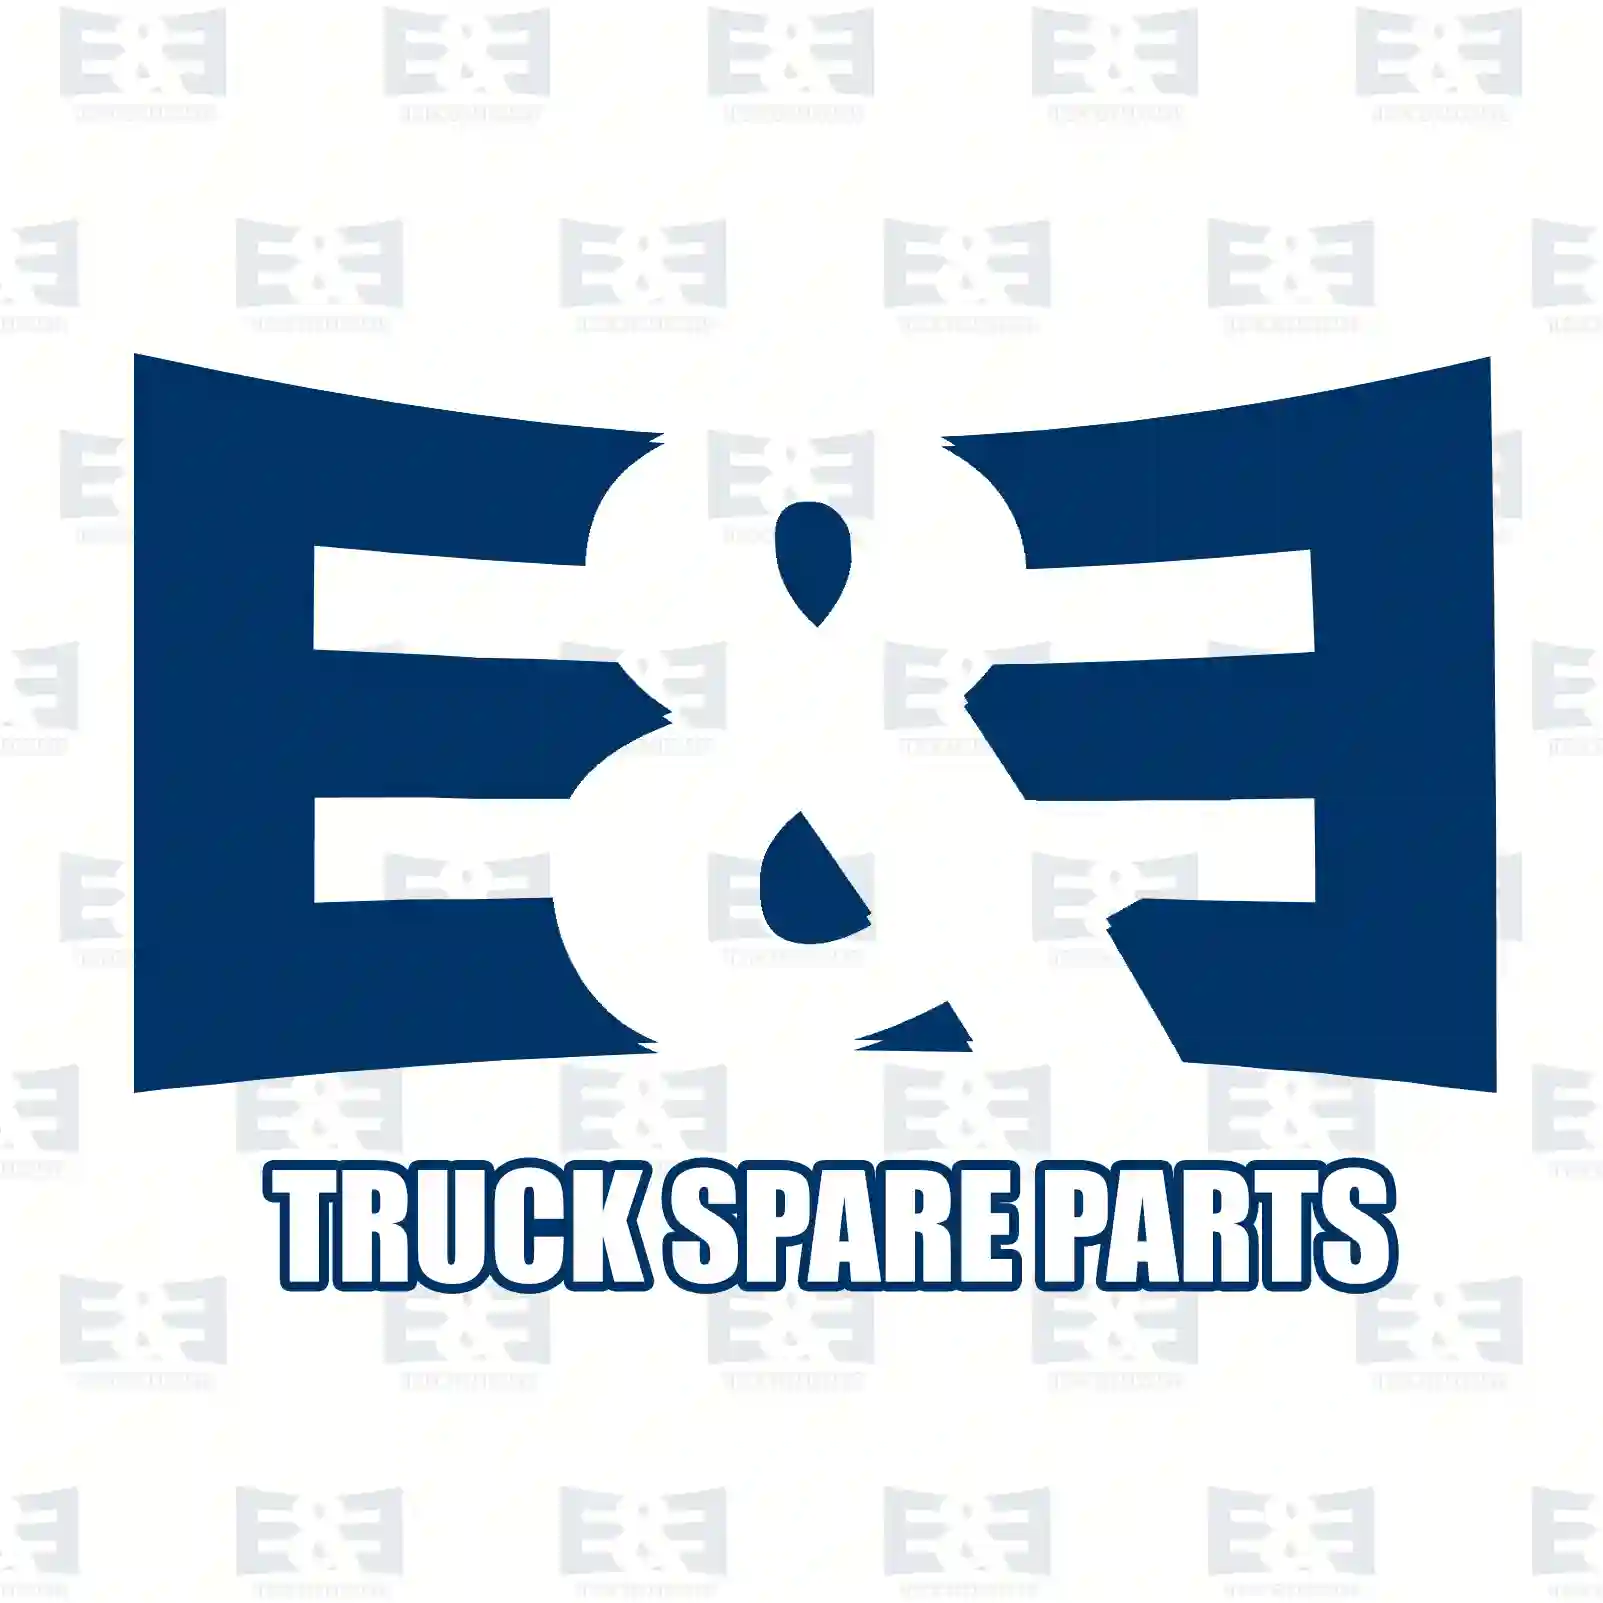 Piston, 2E2296153, 01173720S5, 81541190007, 81541196006, 81541196026, 81541196030, 0001300617, 0001300717, 0001300917, 1409325, 1697107, 1698848, 3095841, 85101375, 85132651, 85132653 ||  2E2296153 E&E Truck Spare Parts | Truck Spare Parts, Auotomotive Spare Parts Piston, 2E2296153, 01173720S5, 81541190007, 81541196006, 81541196026, 81541196030, 0001300617, 0001300717, 0001300917, 1409325, 1697107, 1698848, 3095841, 85101375, 85132651, 85132653 ||  2E2296153 E&E Truck Spare Parts | Truck Spare Parts, Auotomotive Spare Parts